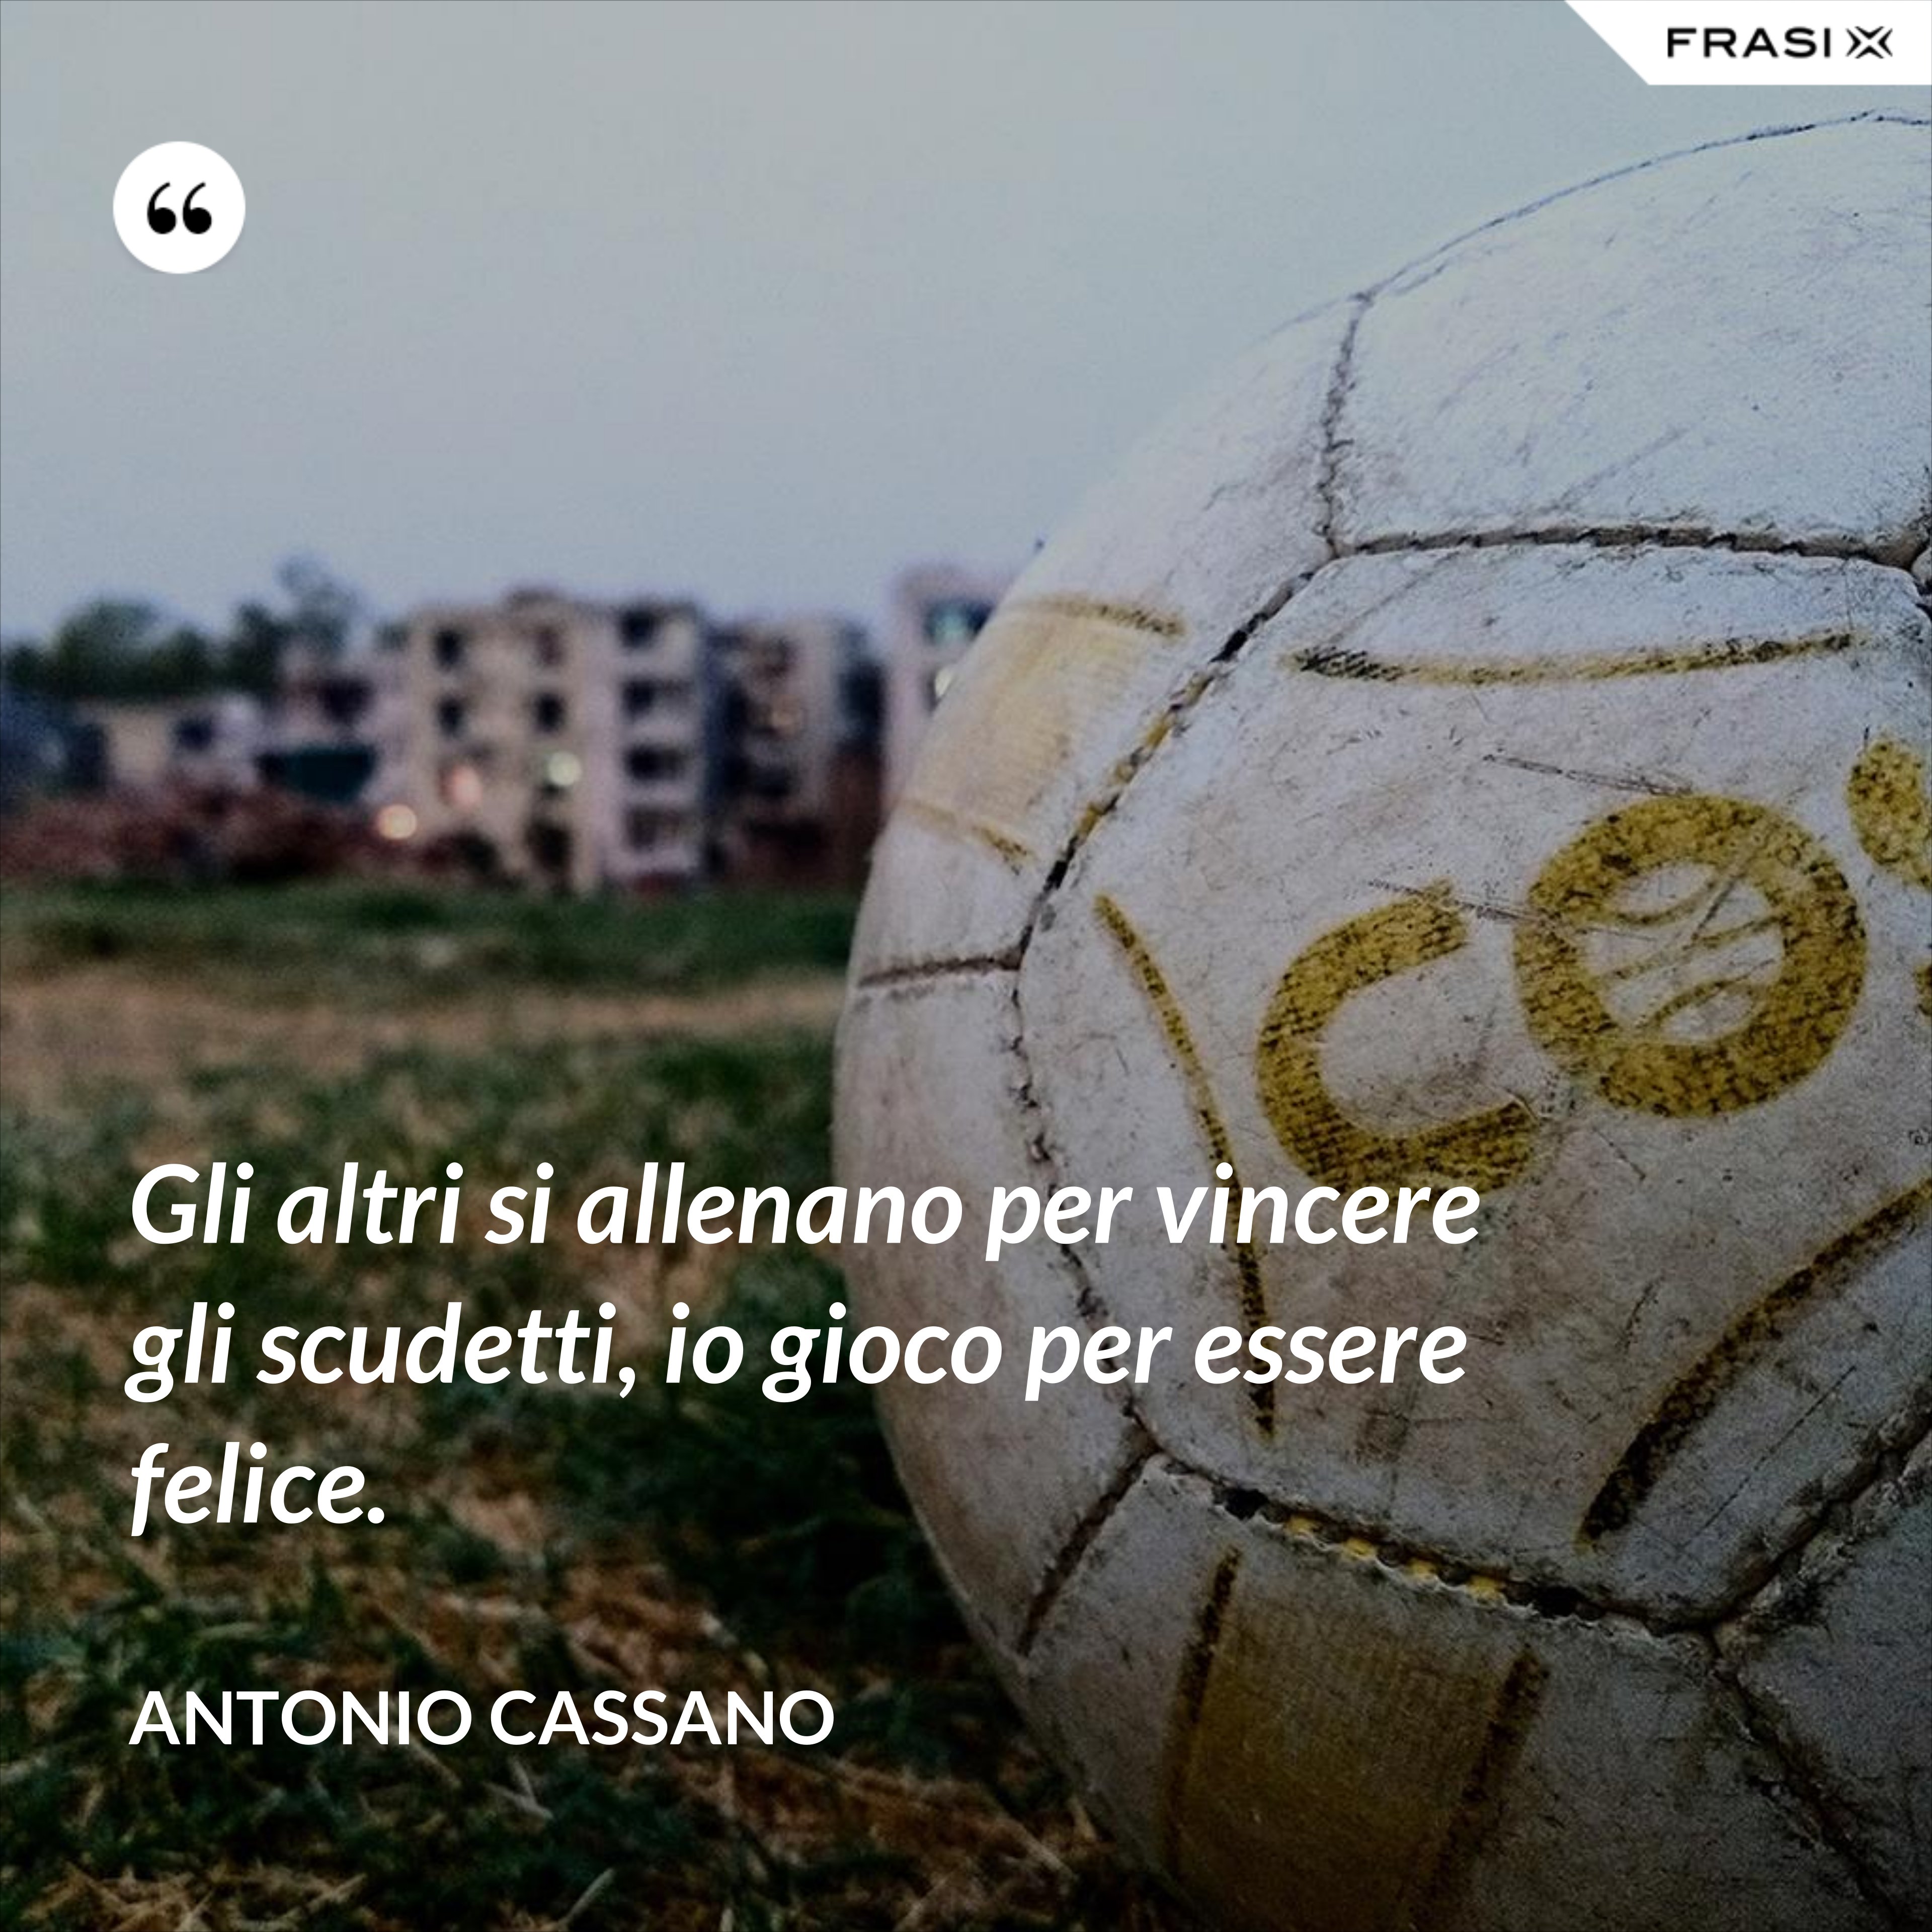 Gli altri si allenano per vincere gli scudetti, io gioco per essere felice. - Antonio Cassano